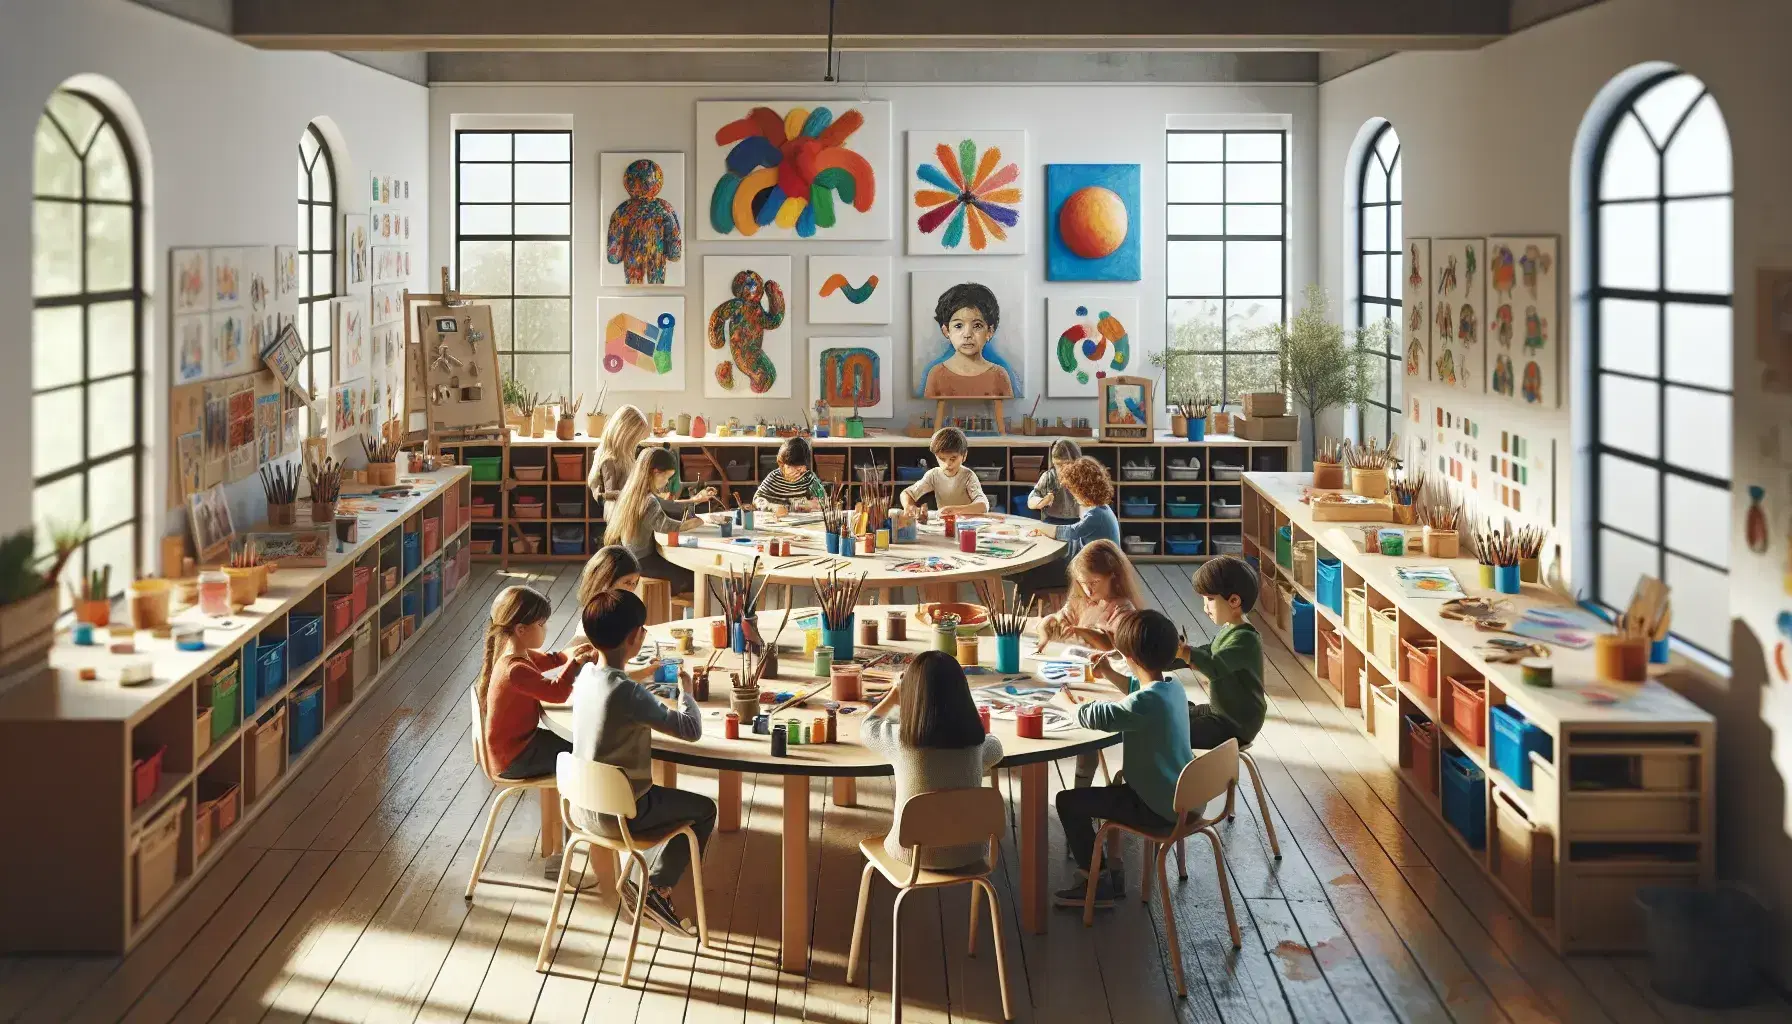 Niños de diversas edades participan en actividades artísticas en un aula iluminada, rodeados de materiales de arte y obras en las paredes, bajo la supervisión de un adulto.